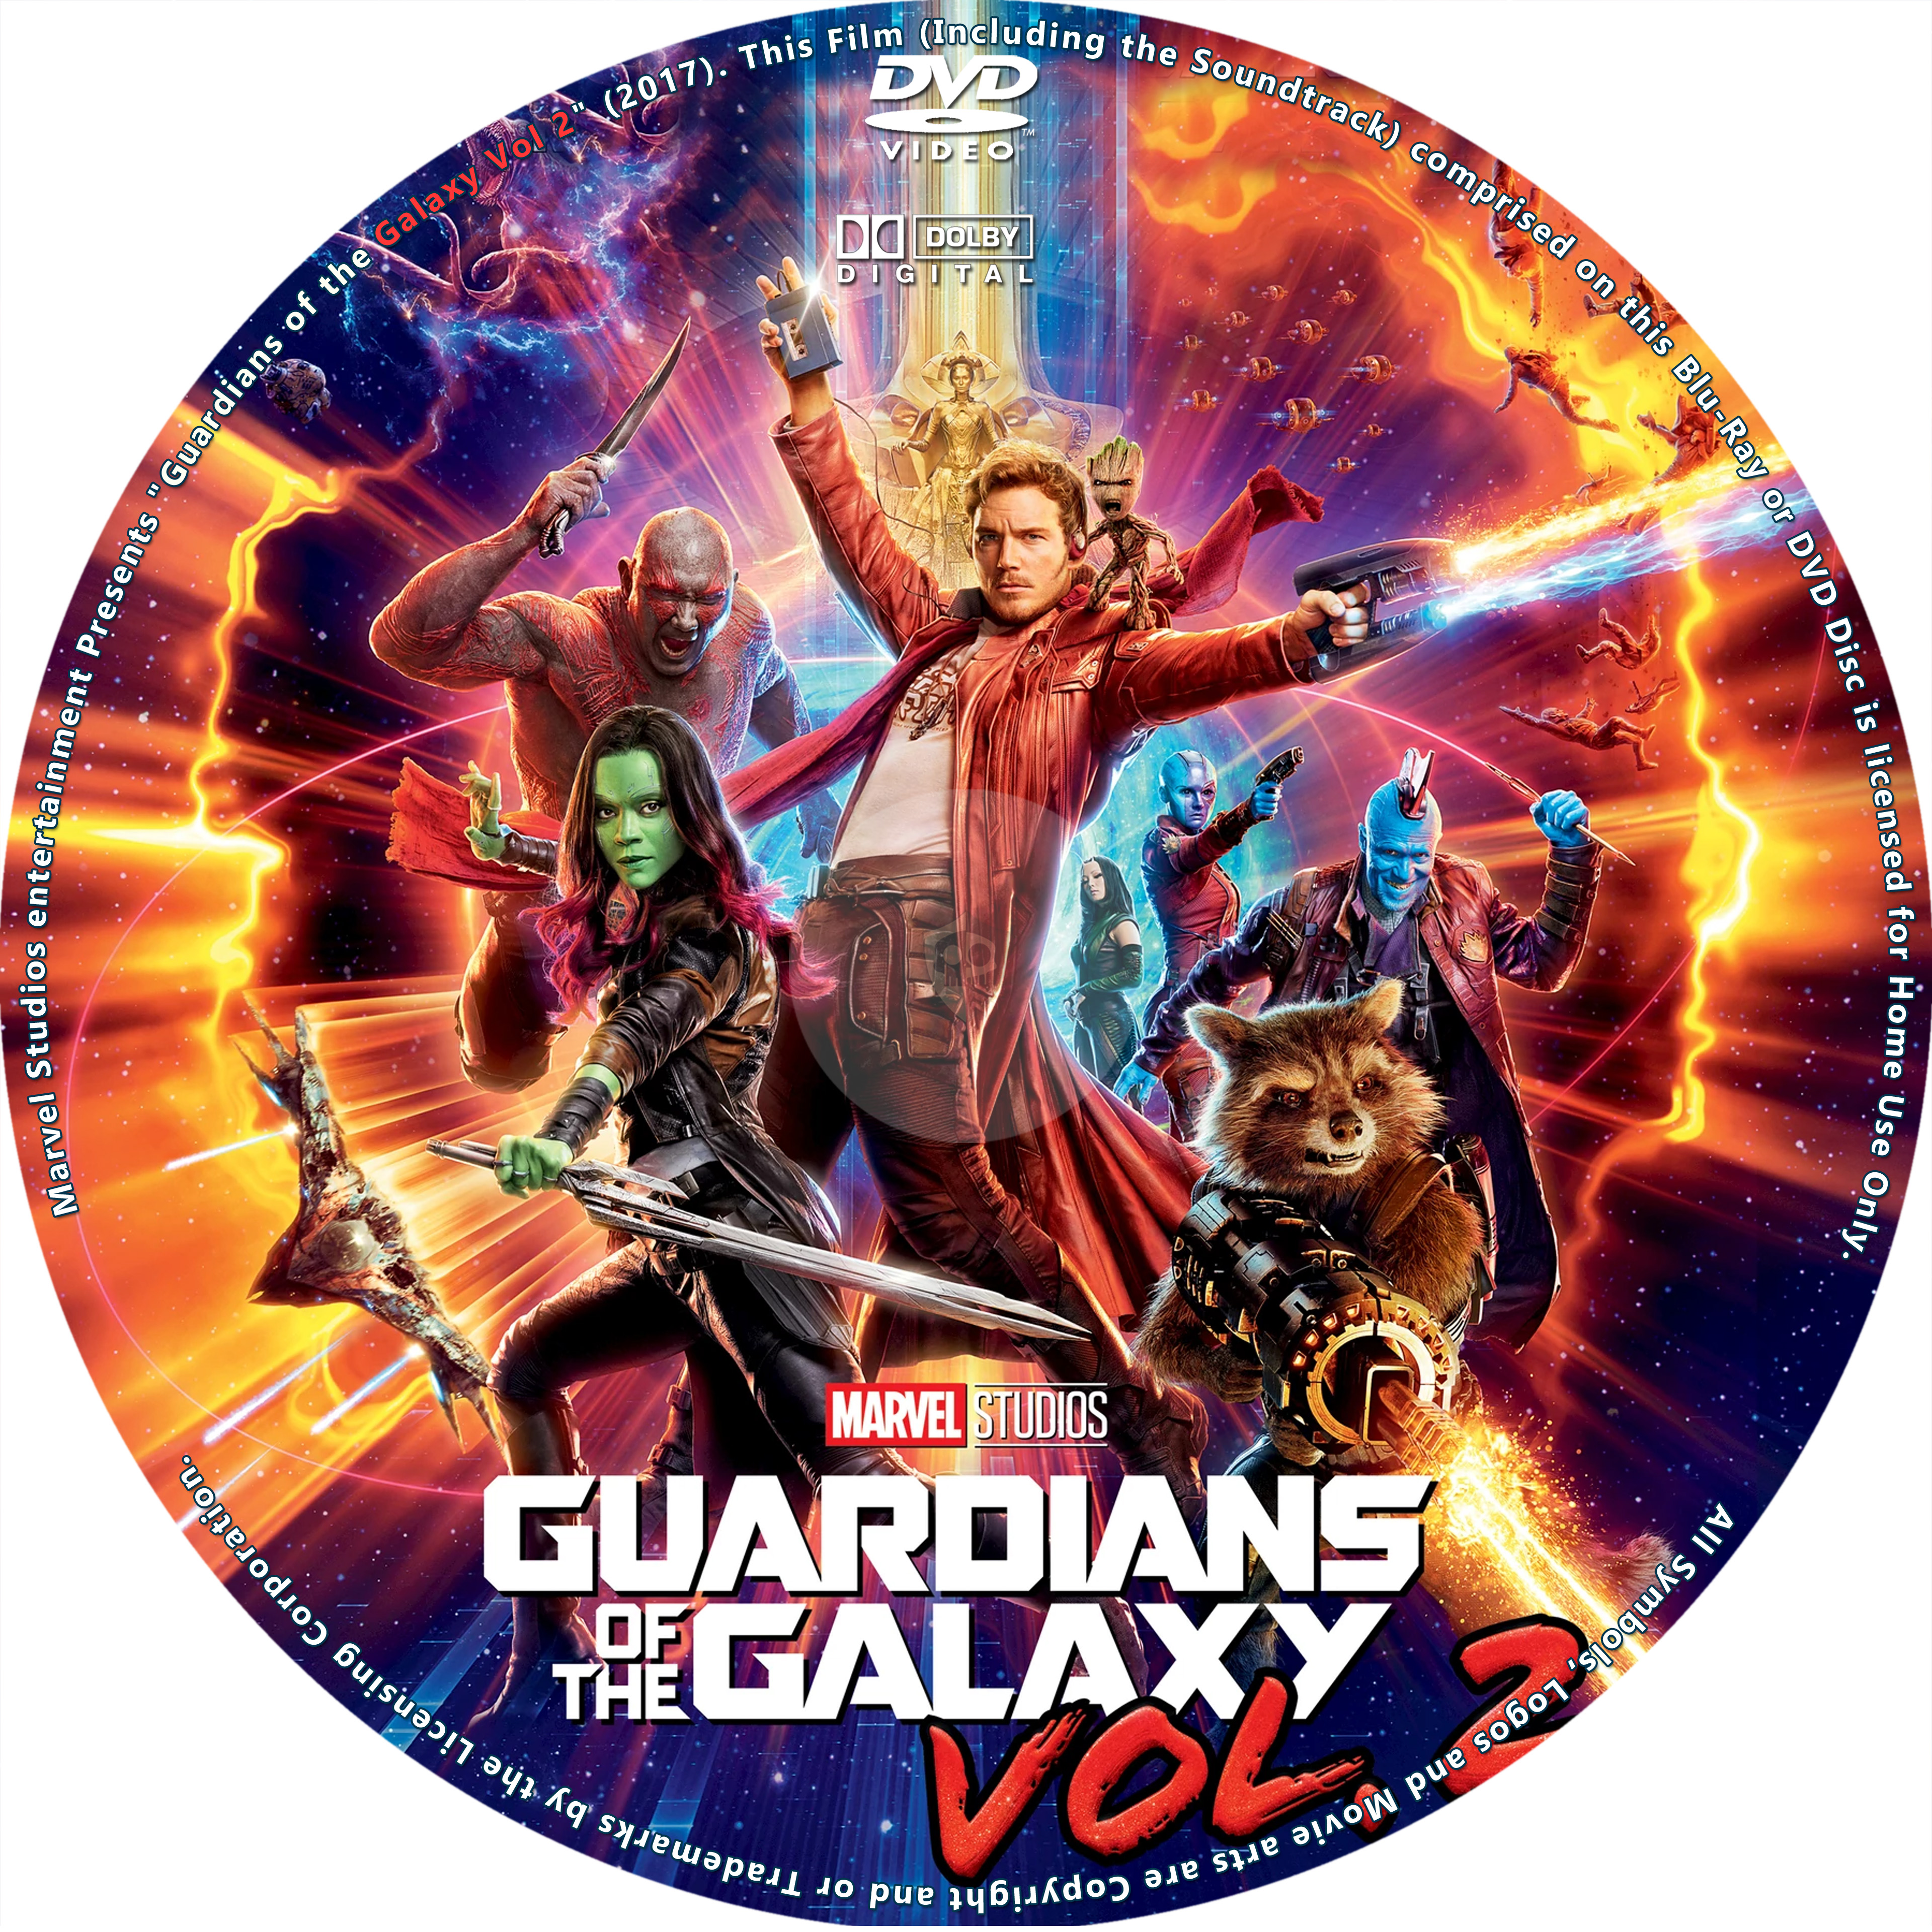 guardians of the galaxy vol 2 soundtrack album